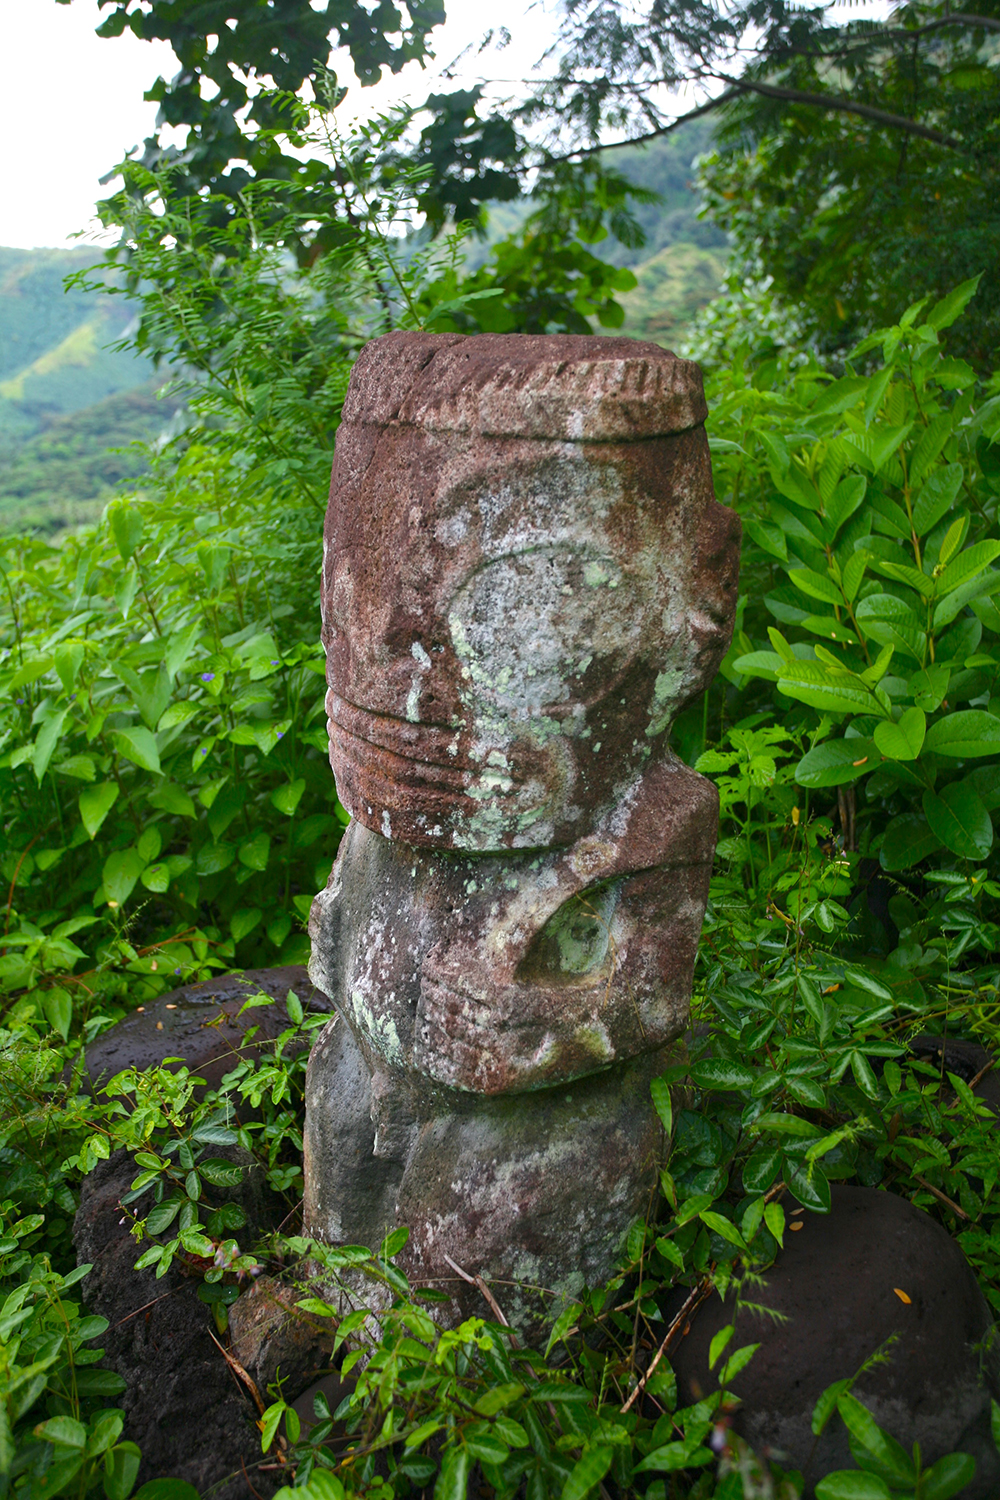 Le suberpe tiki couronné Moeone de Hanapaaoa, dominant le site où il se trouve, en pleine forêt.